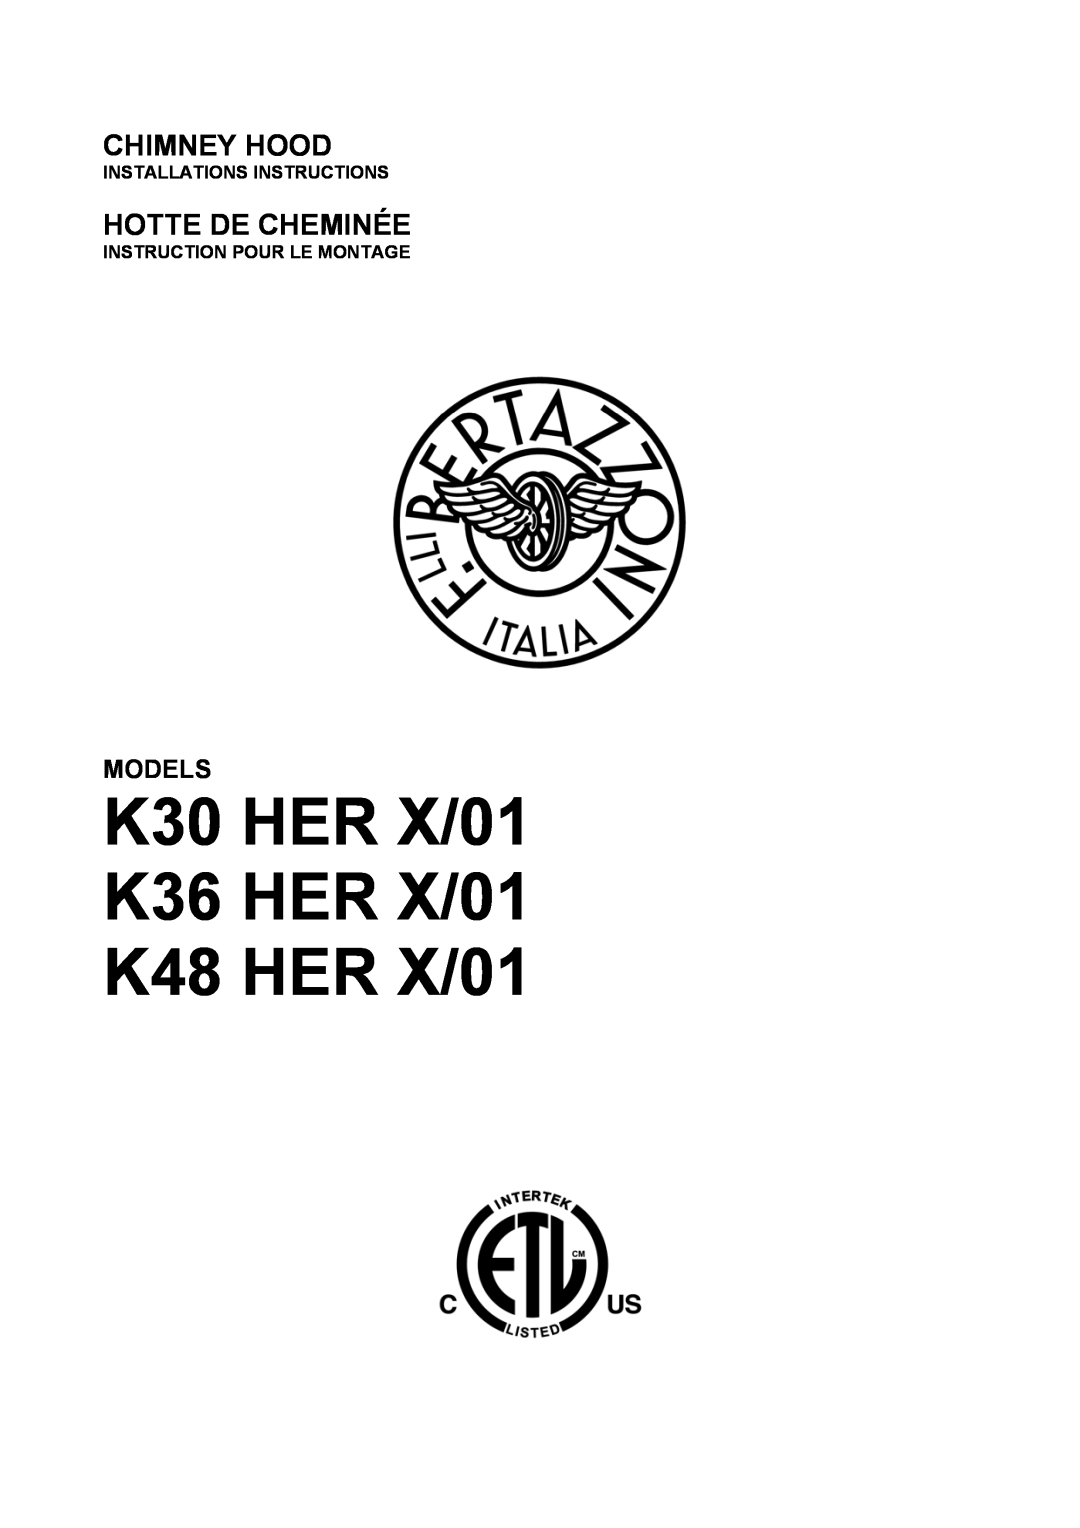 Bertazzoni K36 HER X/01 manual Installations Instructions, Instruction Pour Le Montage, Chimney Hood, Hotte De Cheminée 